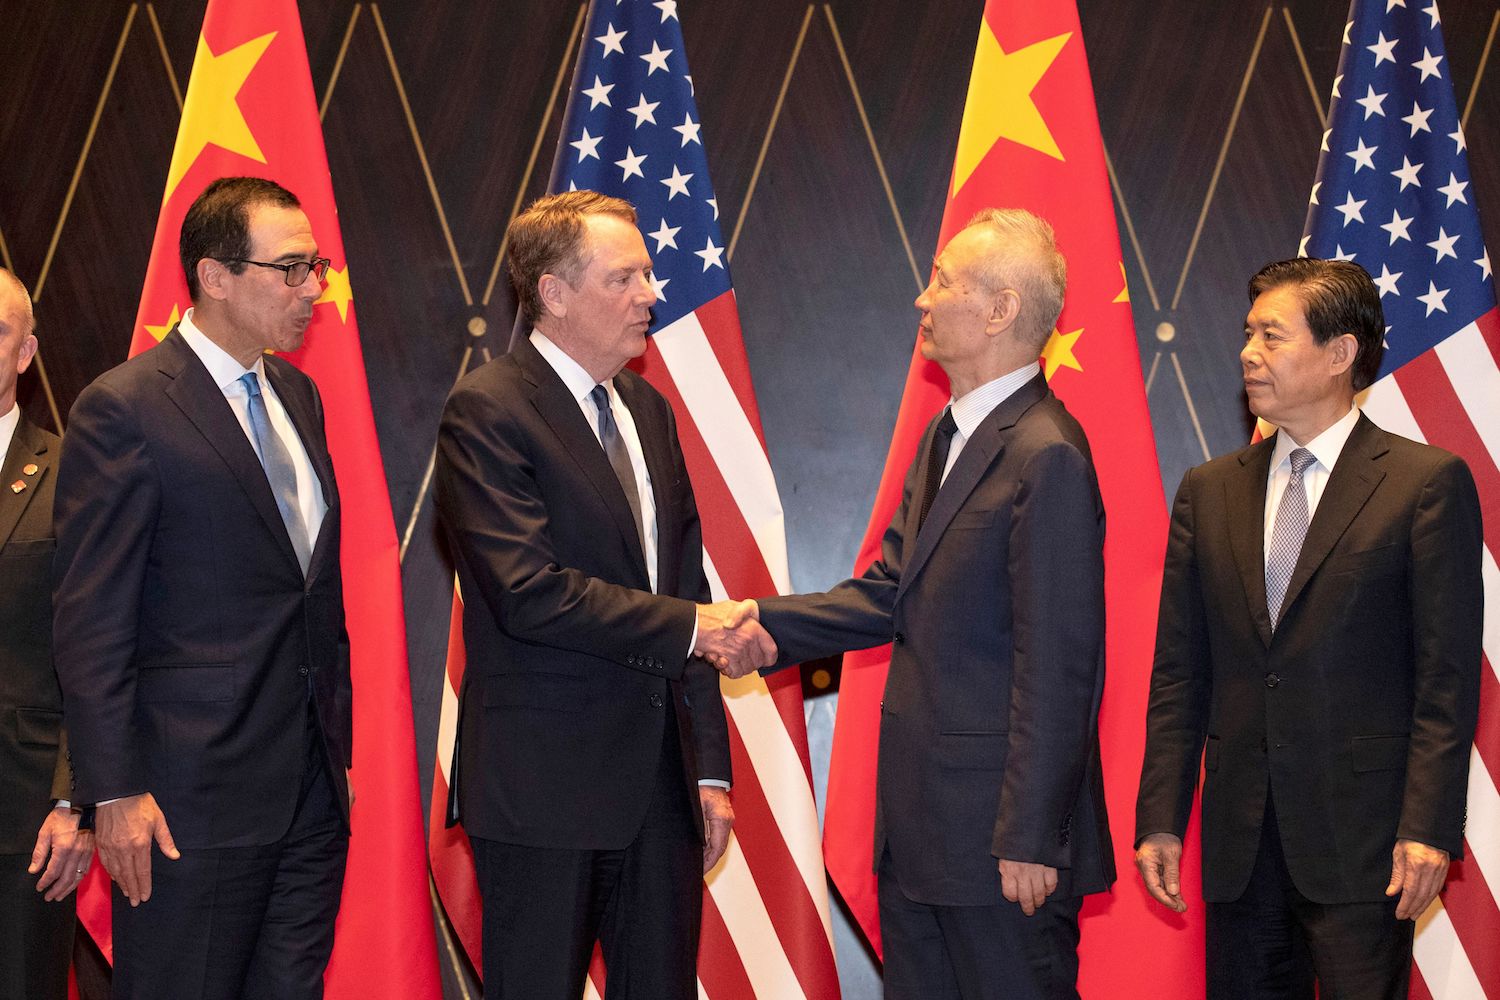 Les américains veulent arrêter la Chine considérée comme « une force agressive »